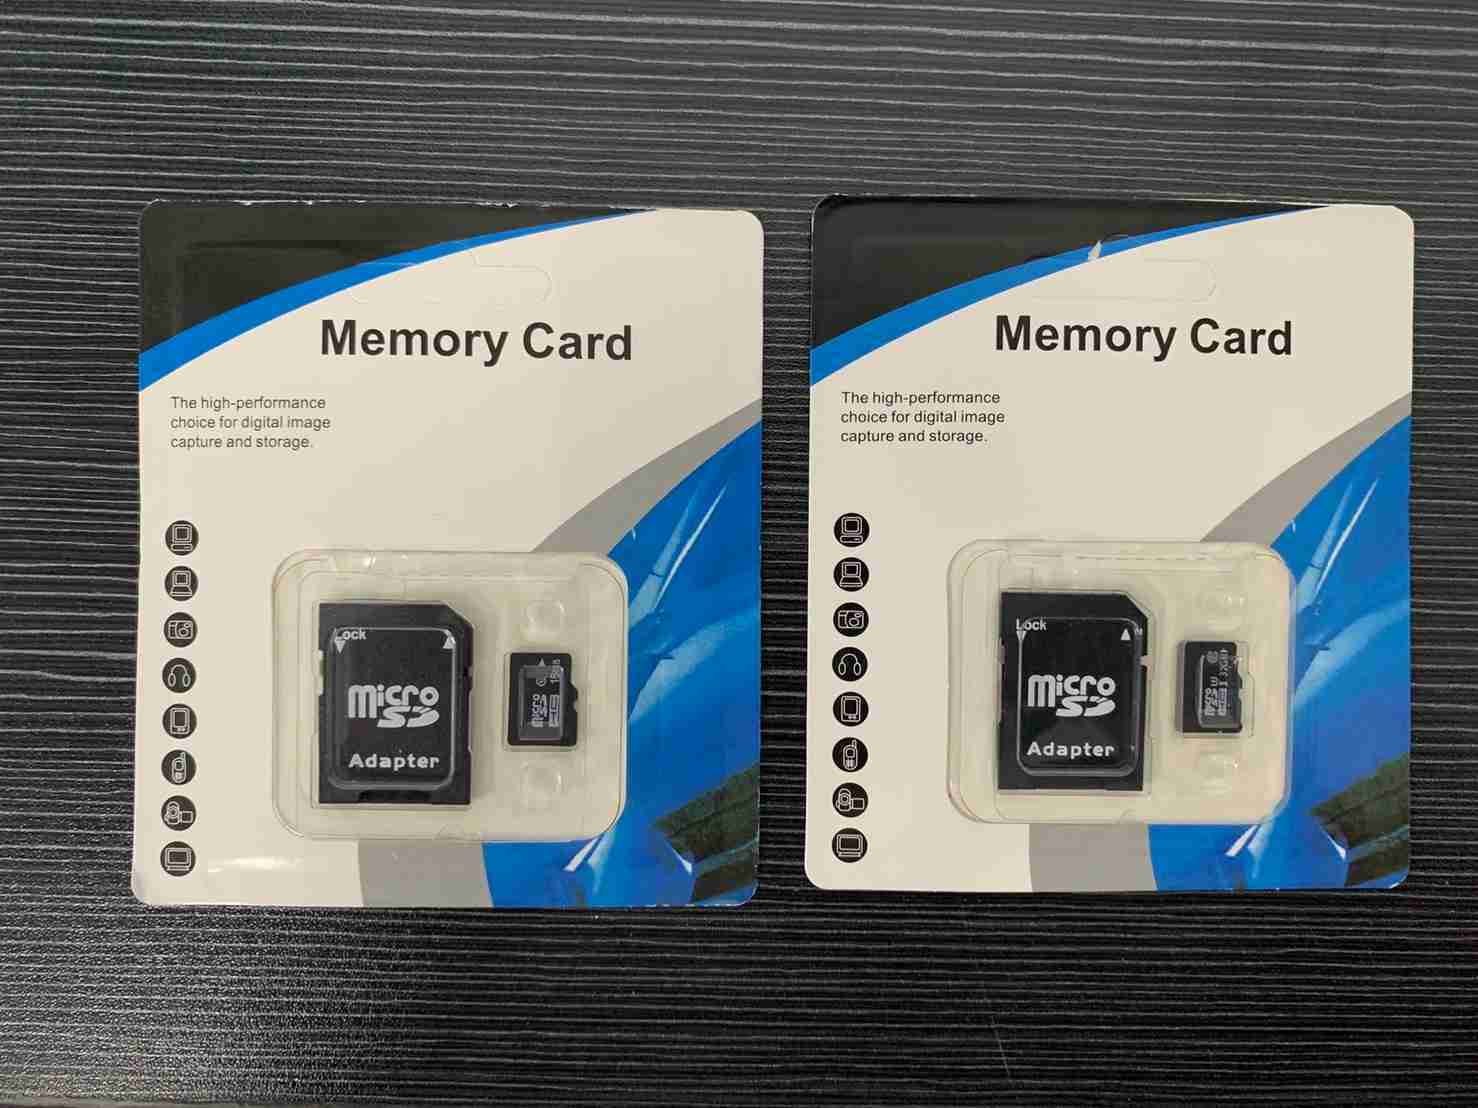 #560【裸裝16G】TF卡 裸裝記憶卡 & 記憶卡+轉接卡 16G/32G 高速Class10 Micro卡【愛尚生活